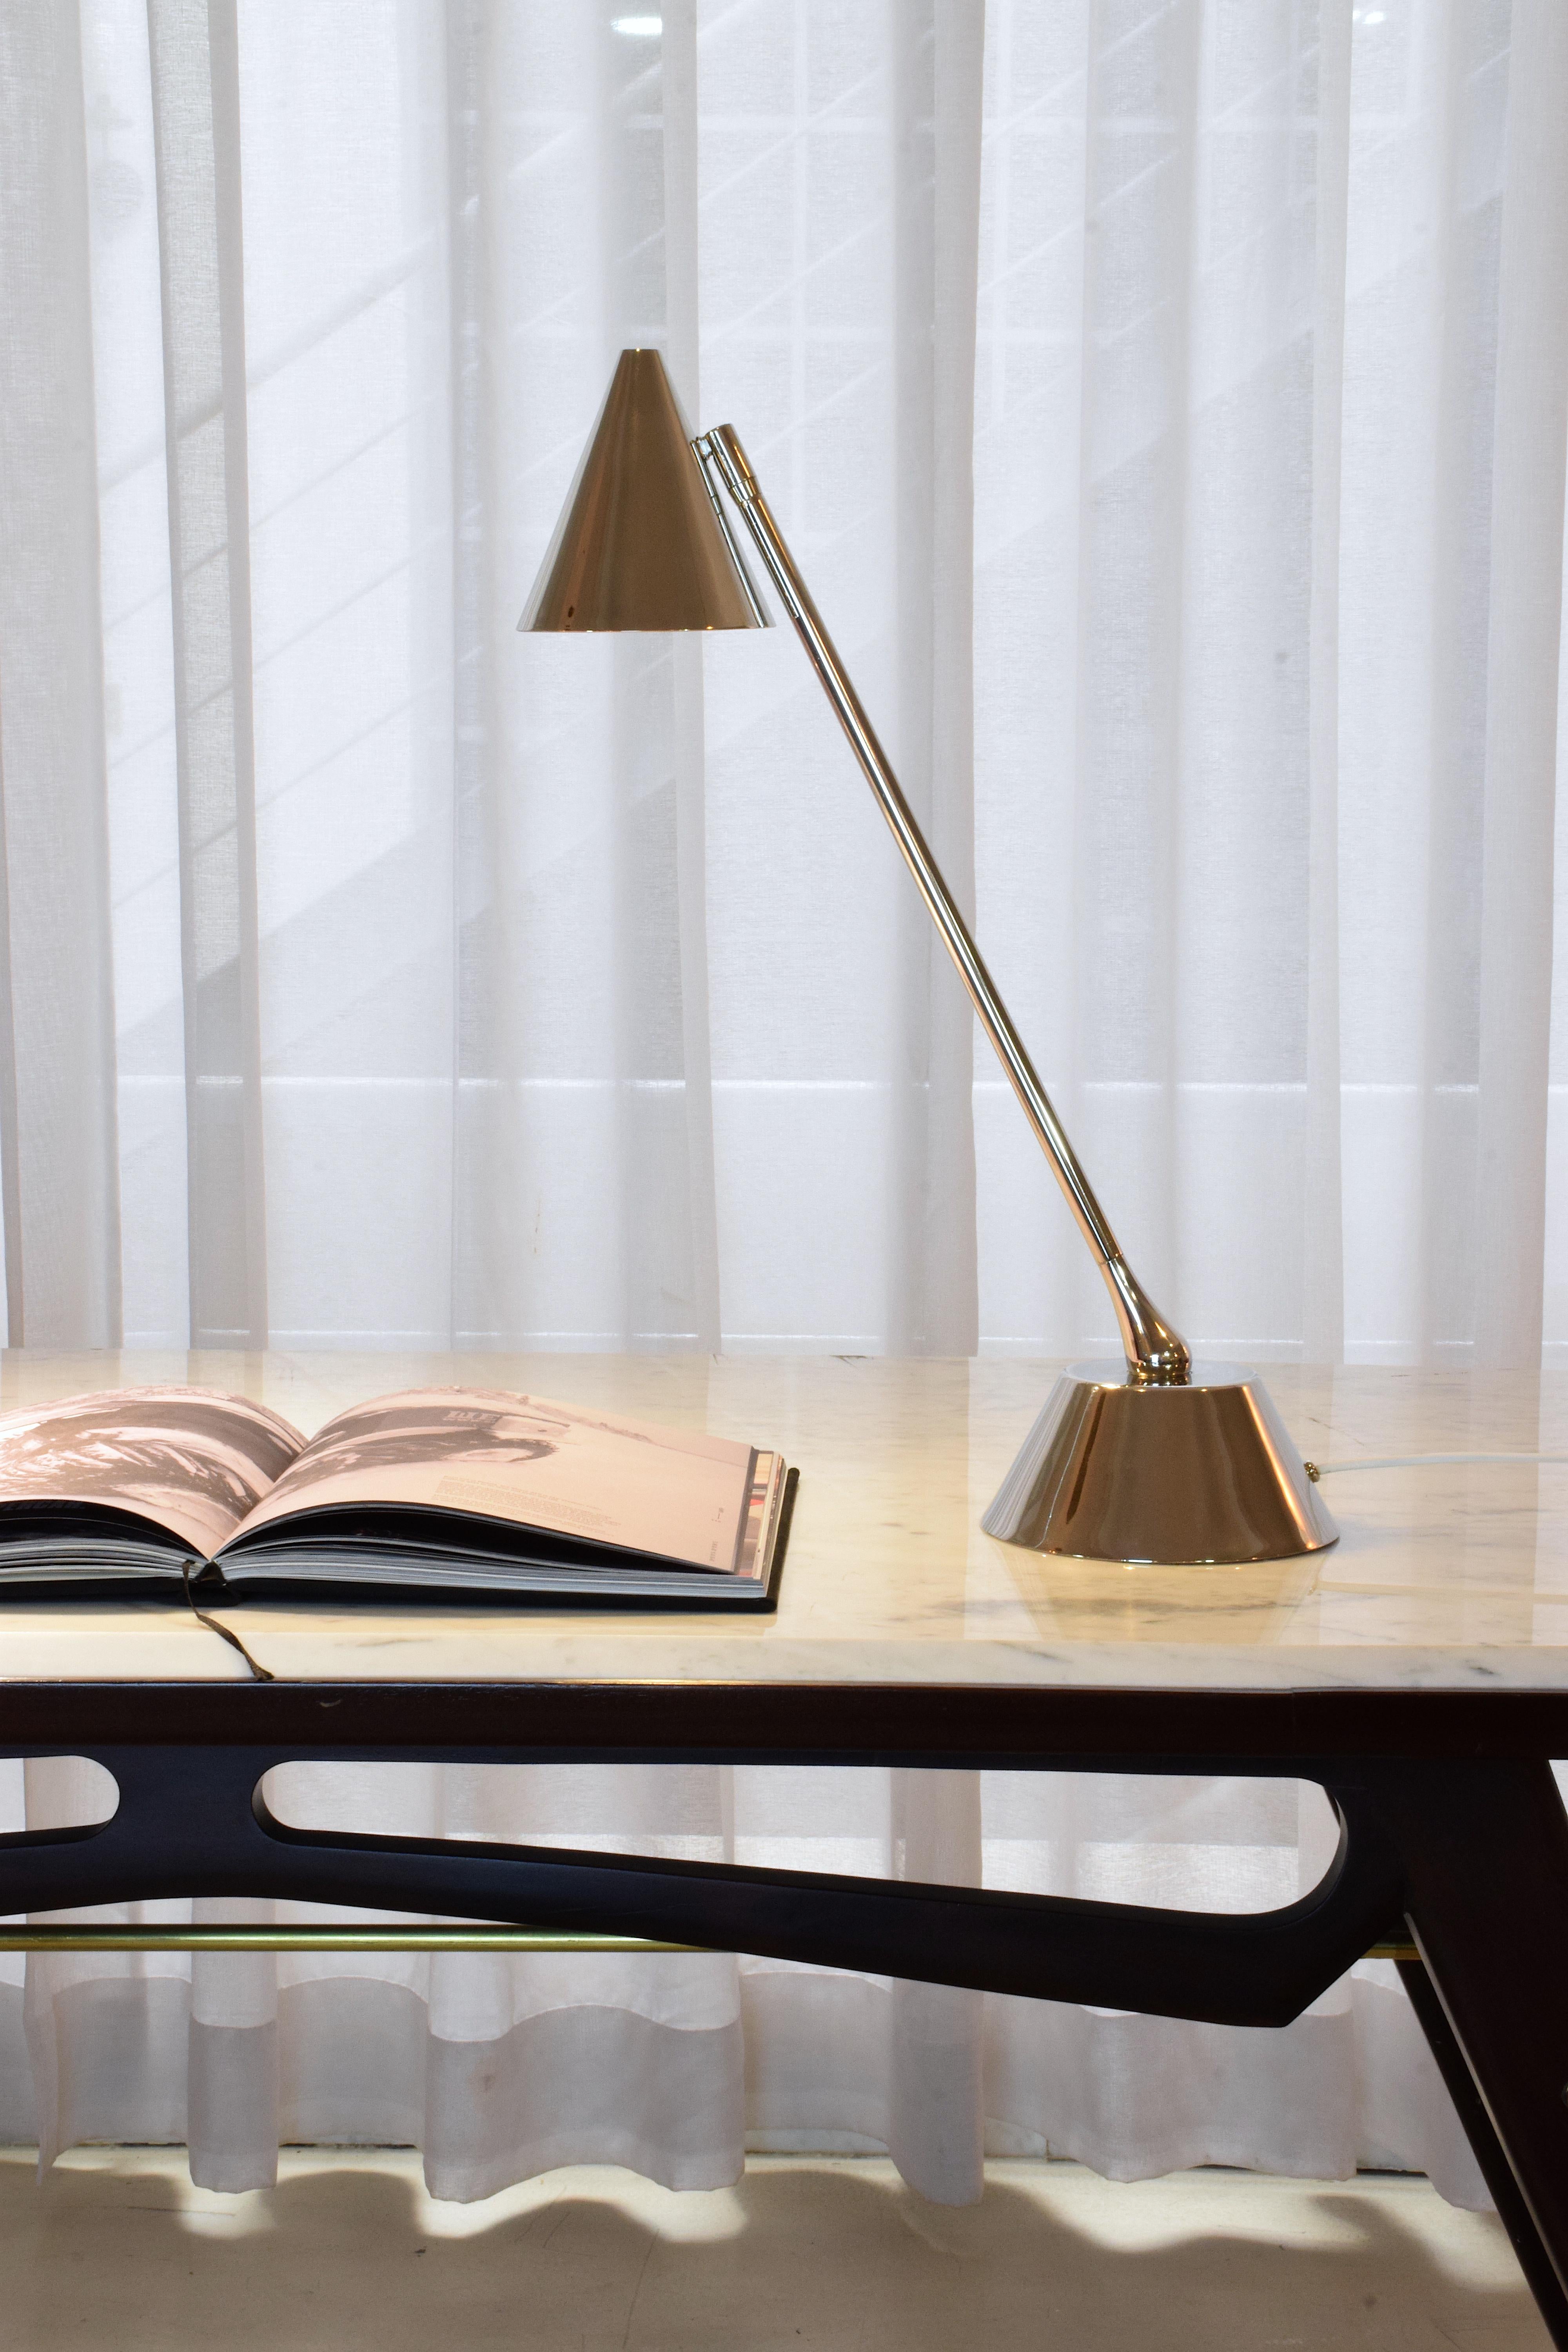 La Design/One T2 est une lampe de table ou de bureau sophistiquée, conçue en laiton massif nickelé, avec un pied tubulaire directionnel et un abat-jour conique réglable.

G9 - 7 w Max
110 V - 230 V LED 

Cette pièce est câblée professionnellement